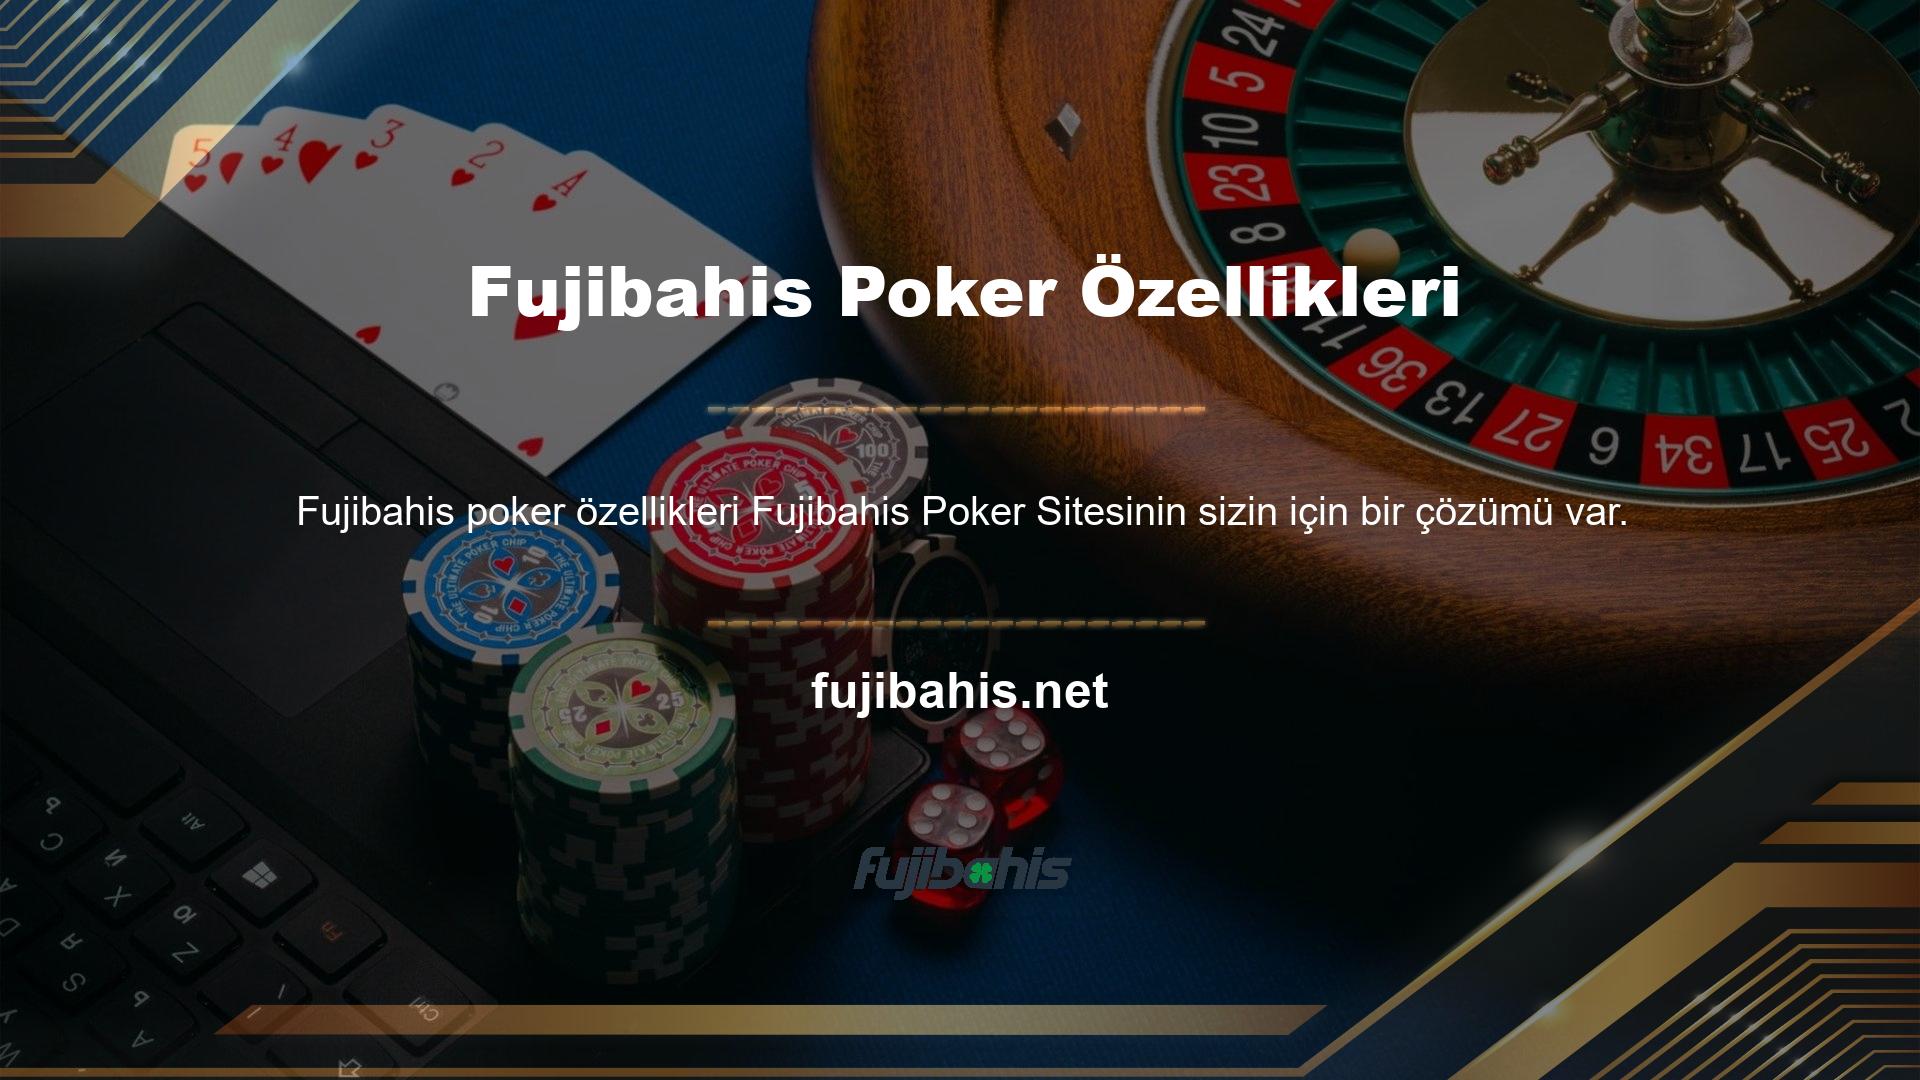 Fujibahis Ödülleri, Ücretli Casino Sitelerindeki masa sayısını artırmak için kullanılabilir